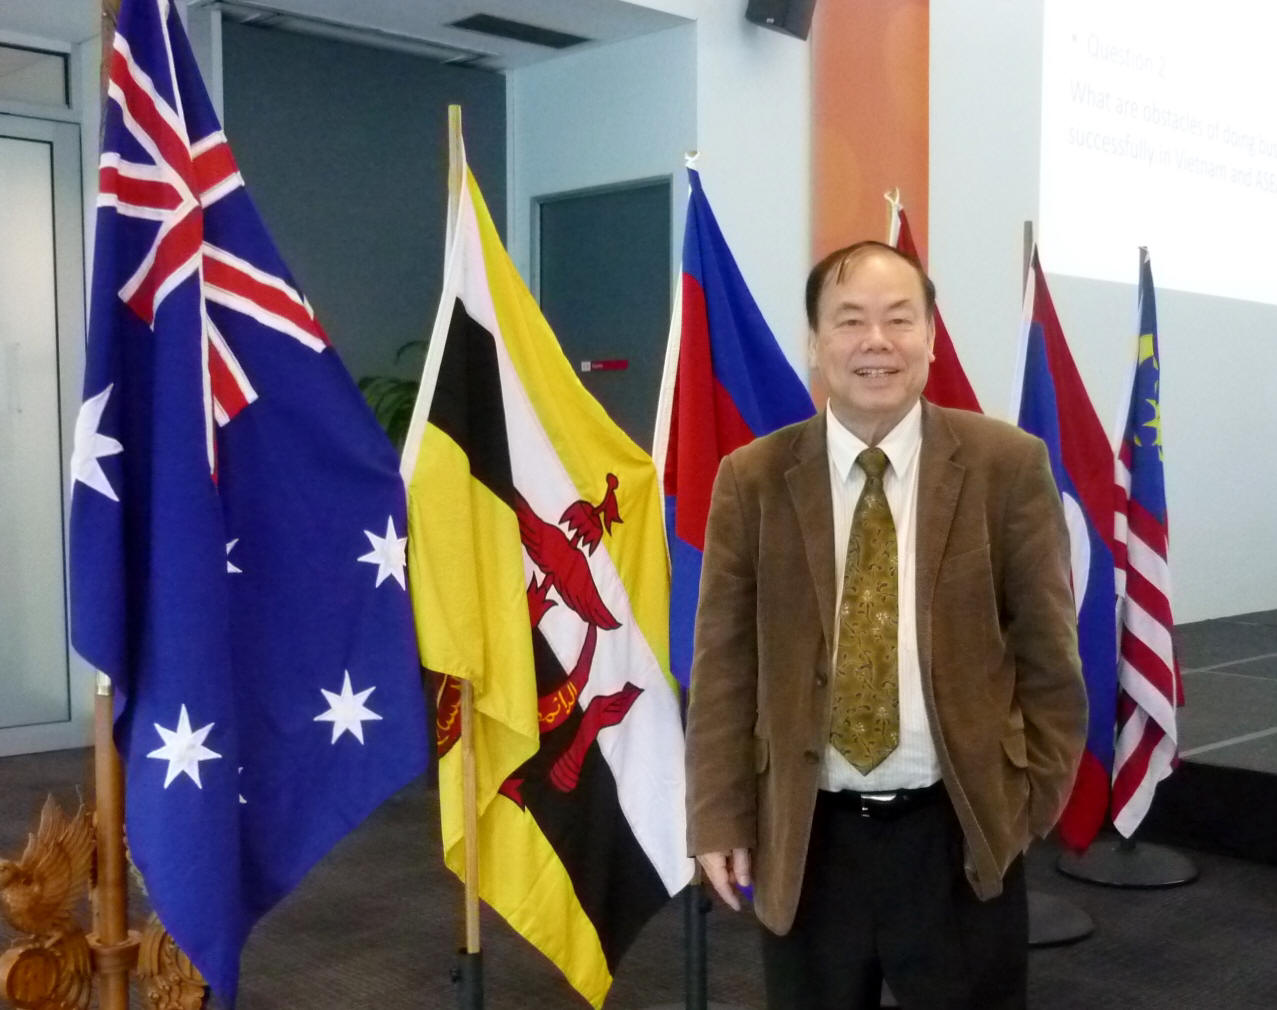 http://www.staff.vu.edu.au/CSESBL/ASEAN-Australia%20flags.jpg